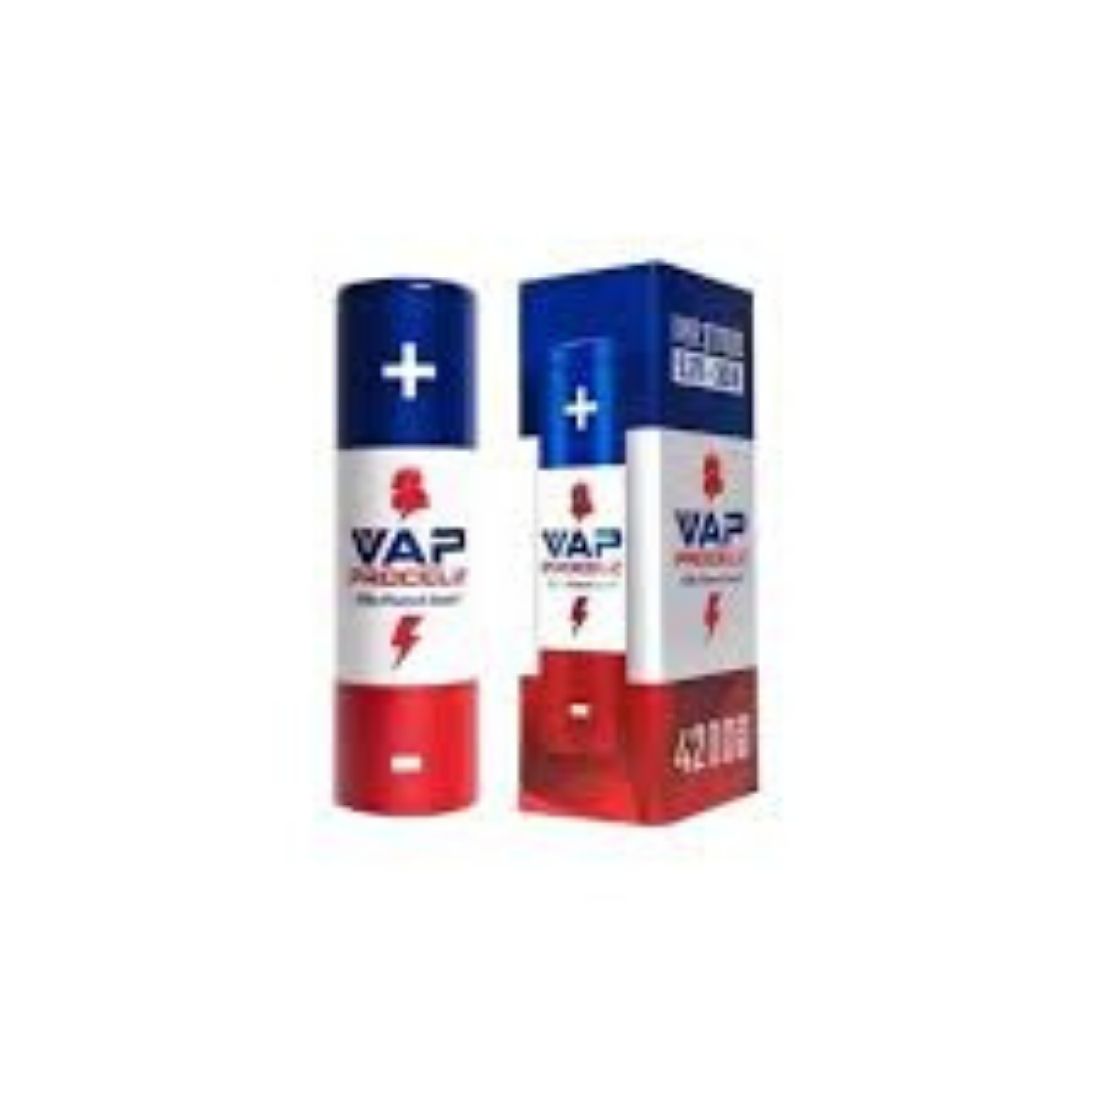 VAP Procell 21700 Battery